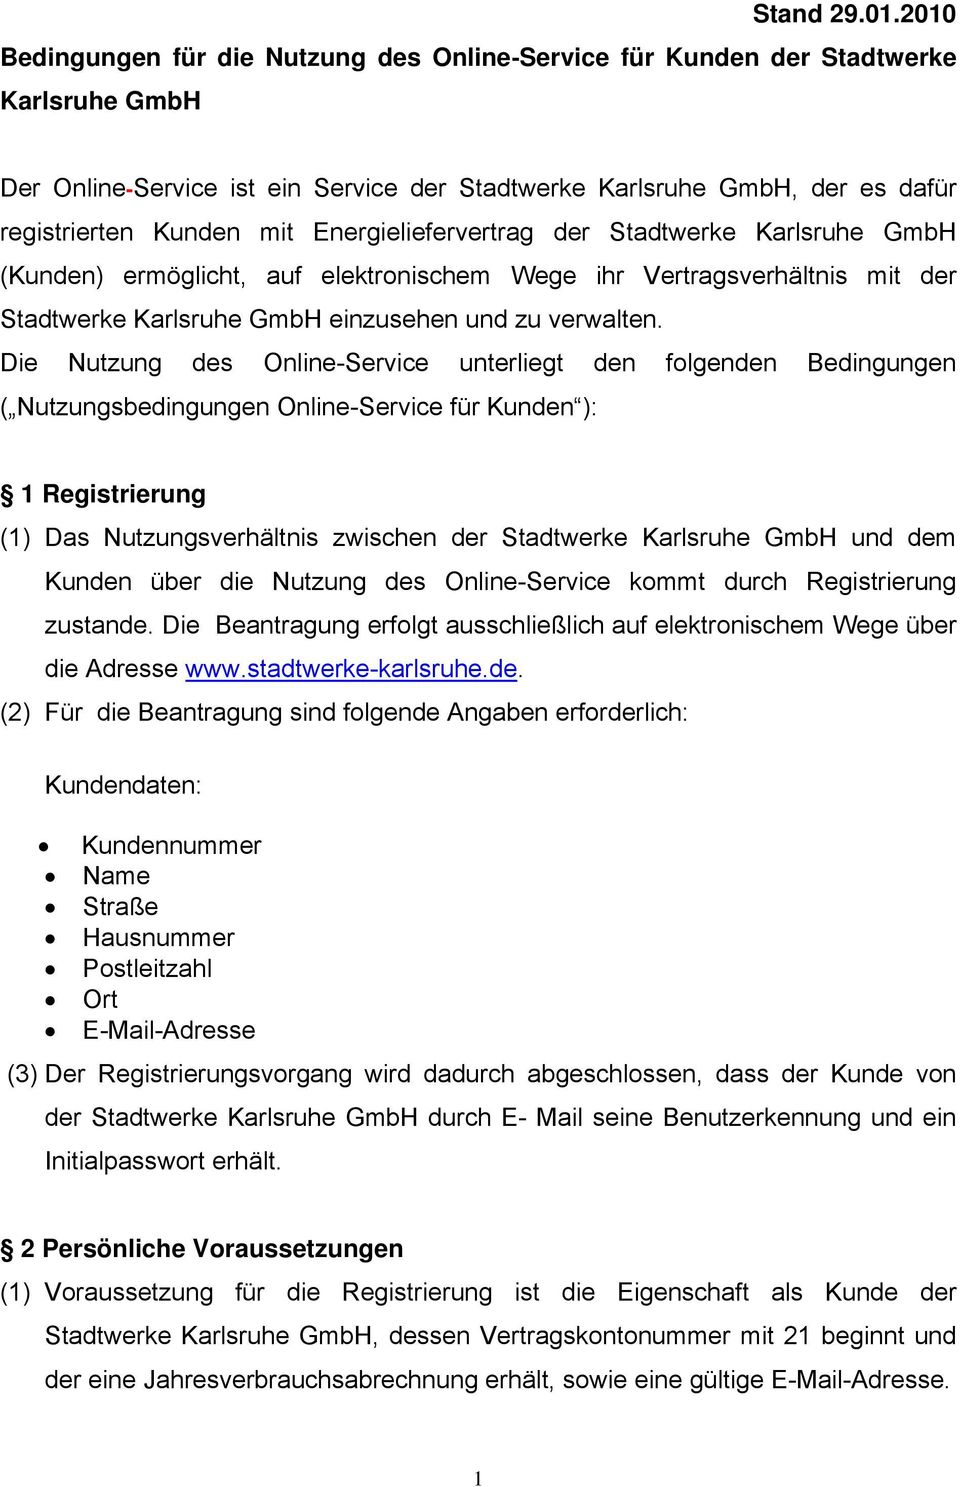 Energieliefervertrag der Stadtwerke Karlsruhe GmbH (Kunden) ermöglicht, auf elektronischem Wege ihr Vertragsverhältnis mit der Stadtwerke Karlsruhe GmbH einzusehen und zu verwalten.